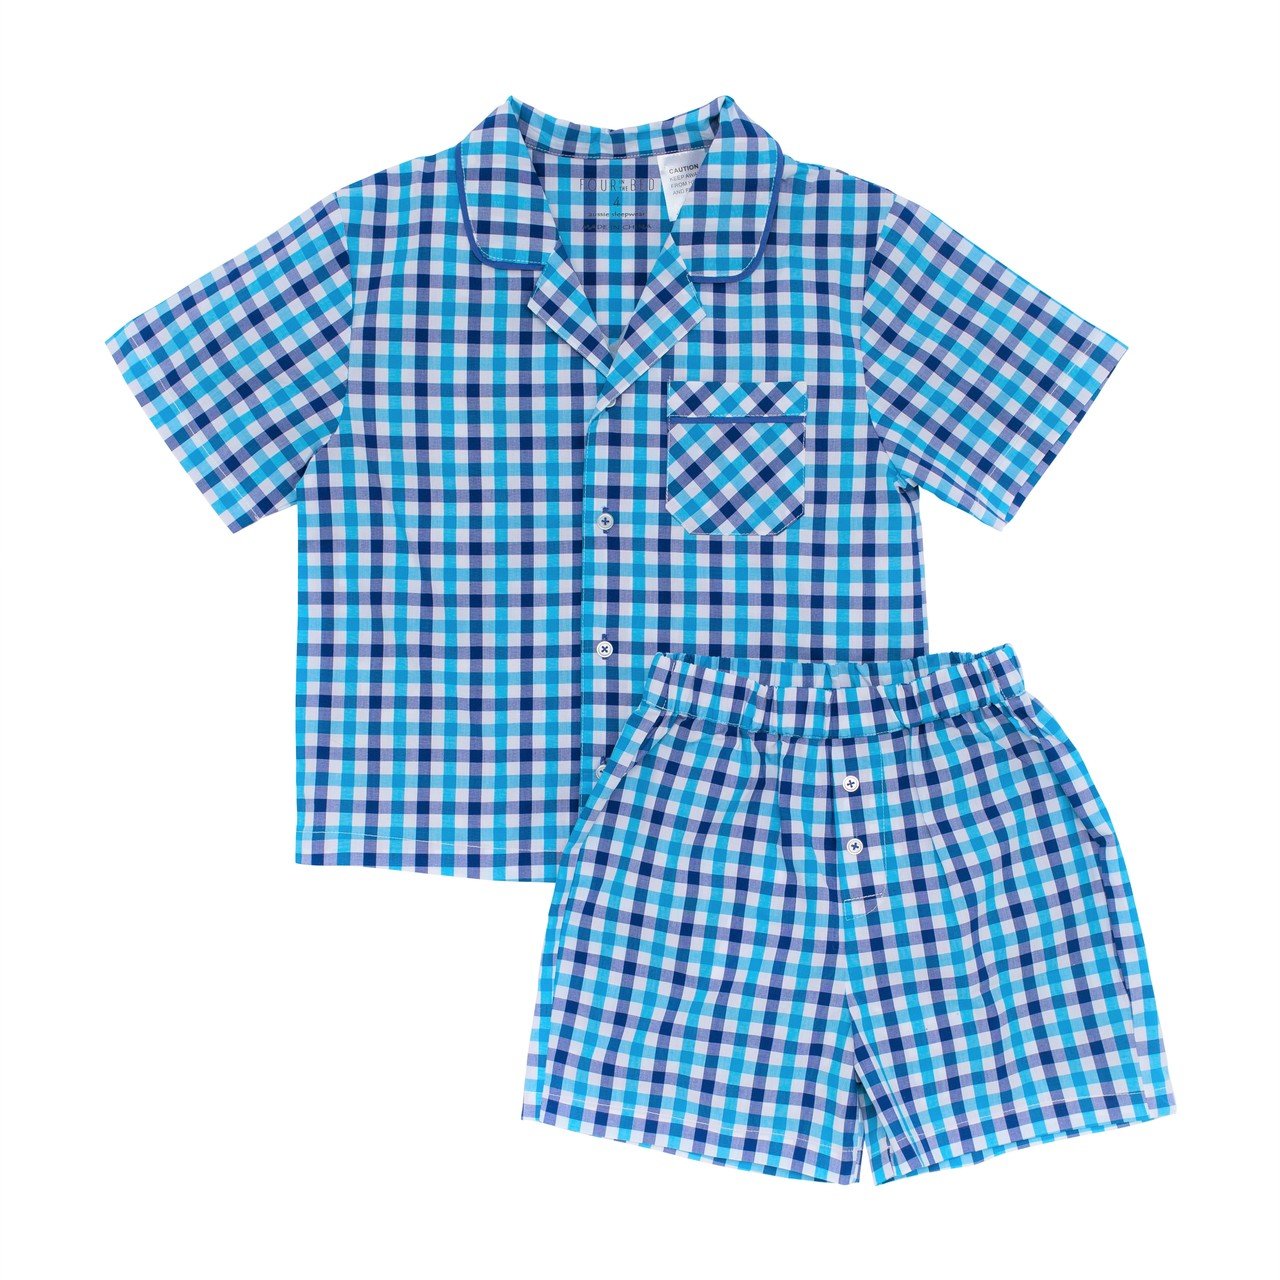 Boys 100% woven cotton summer pyjamas - Capri Check